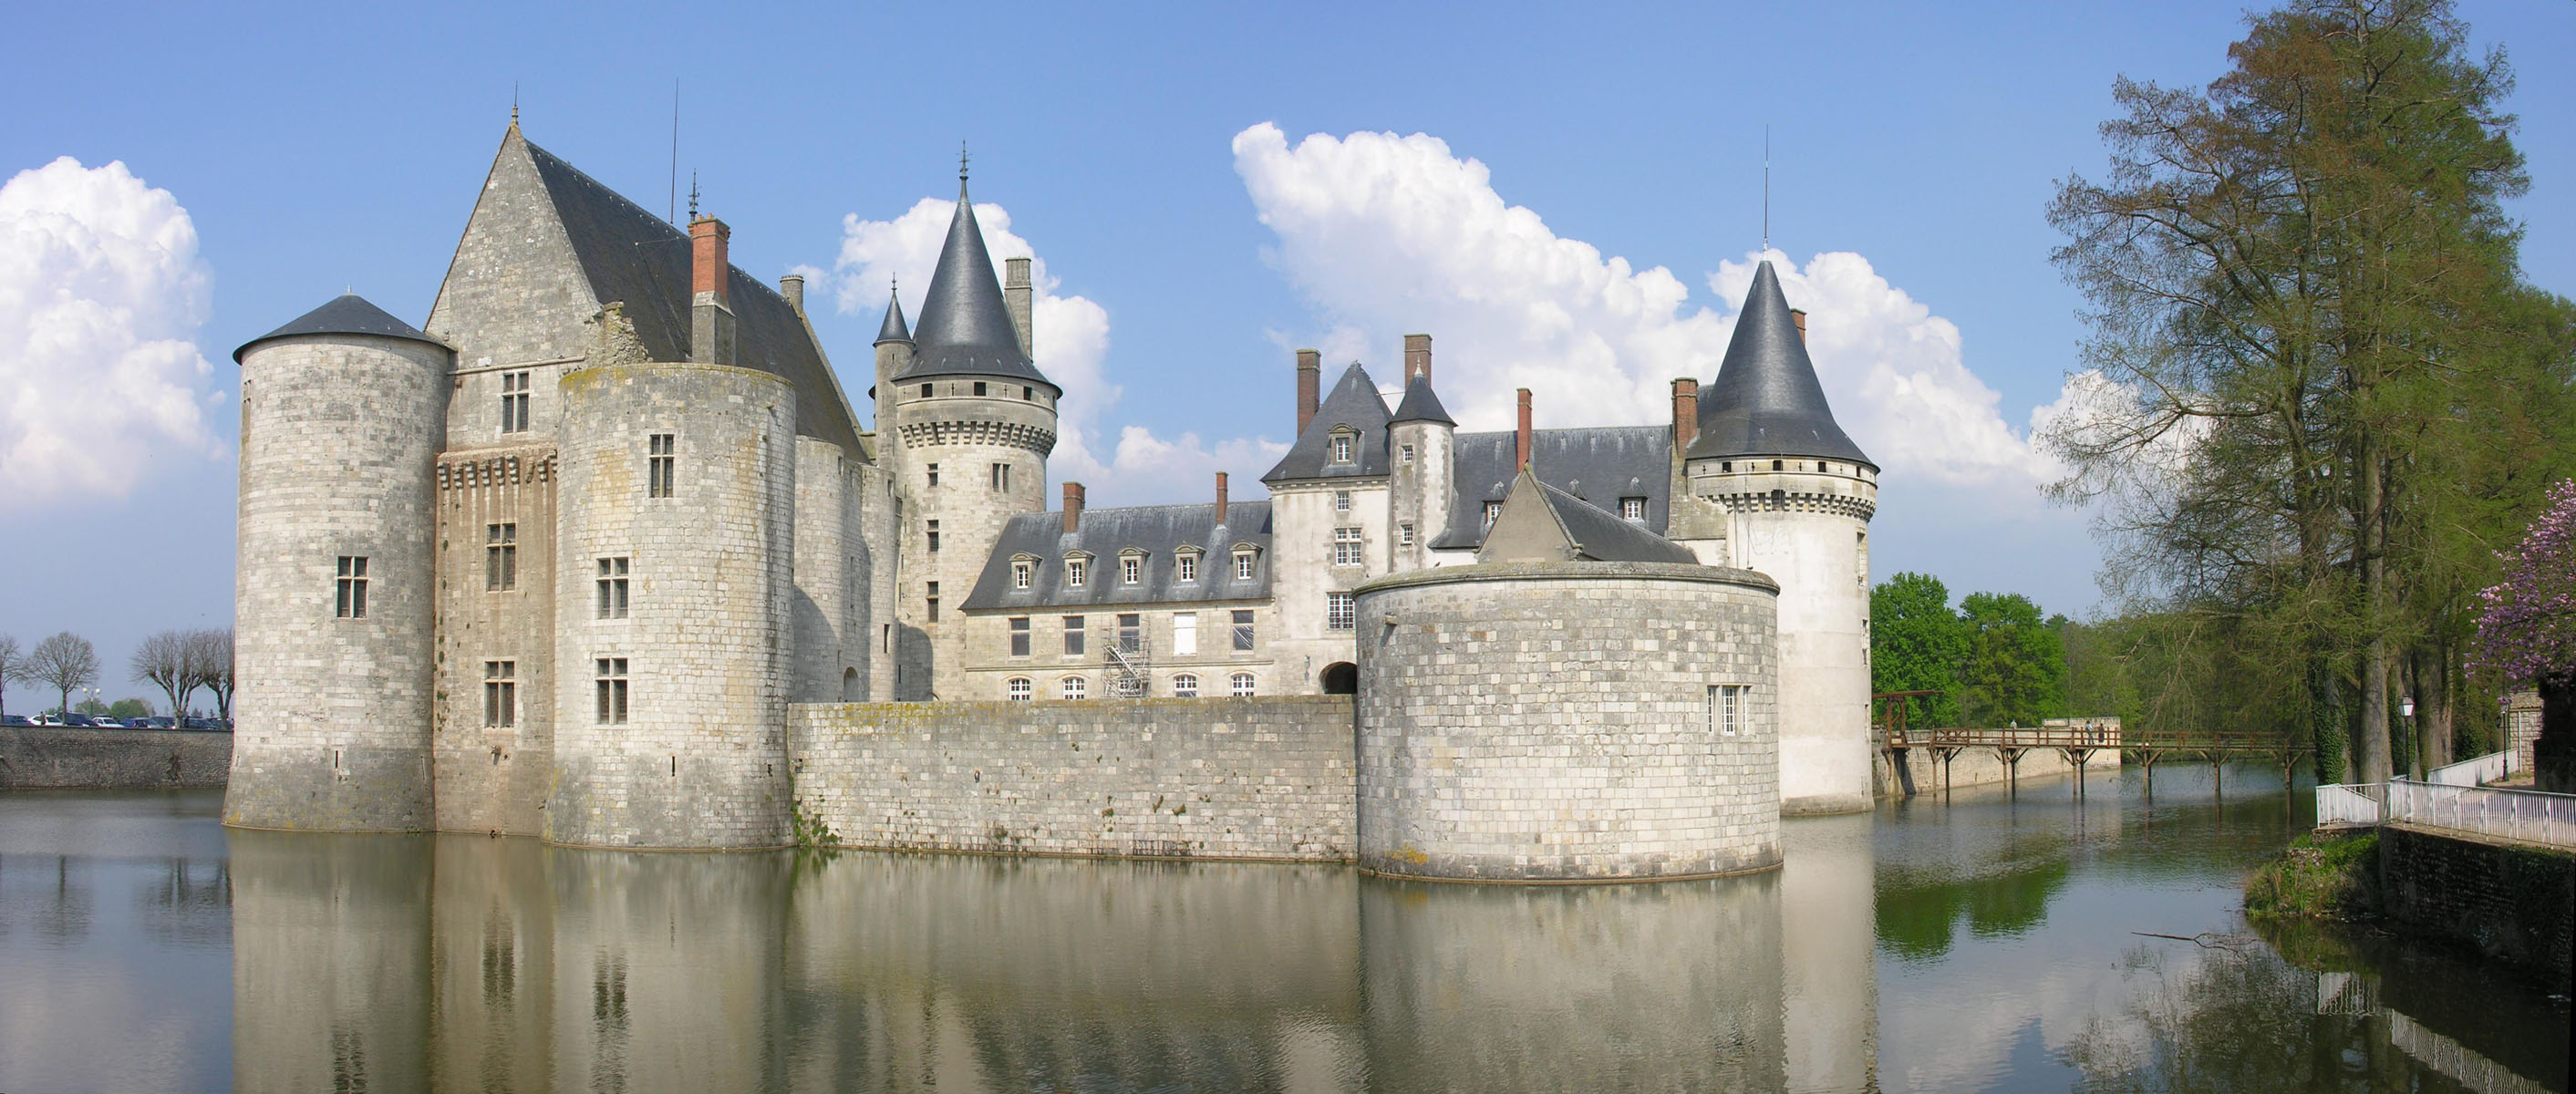 Photo: Castle of Sully sur Loire - France